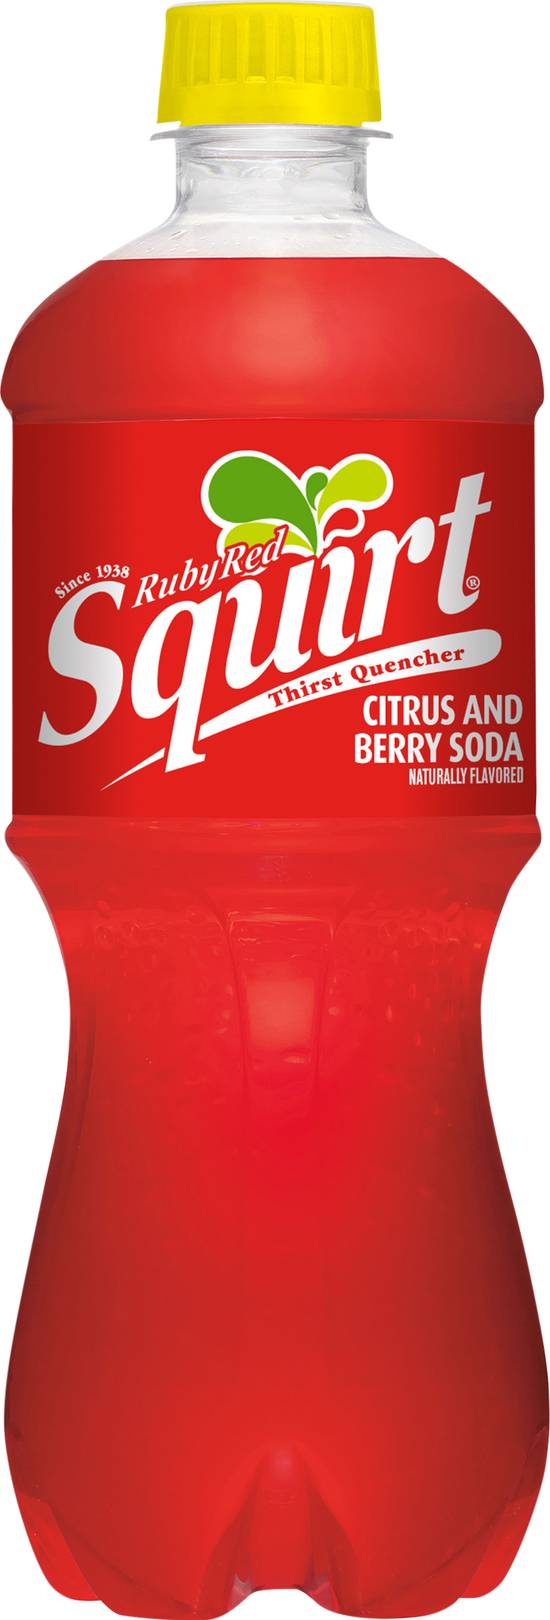 Squirt Ruby Red Soda (20 fl oz)